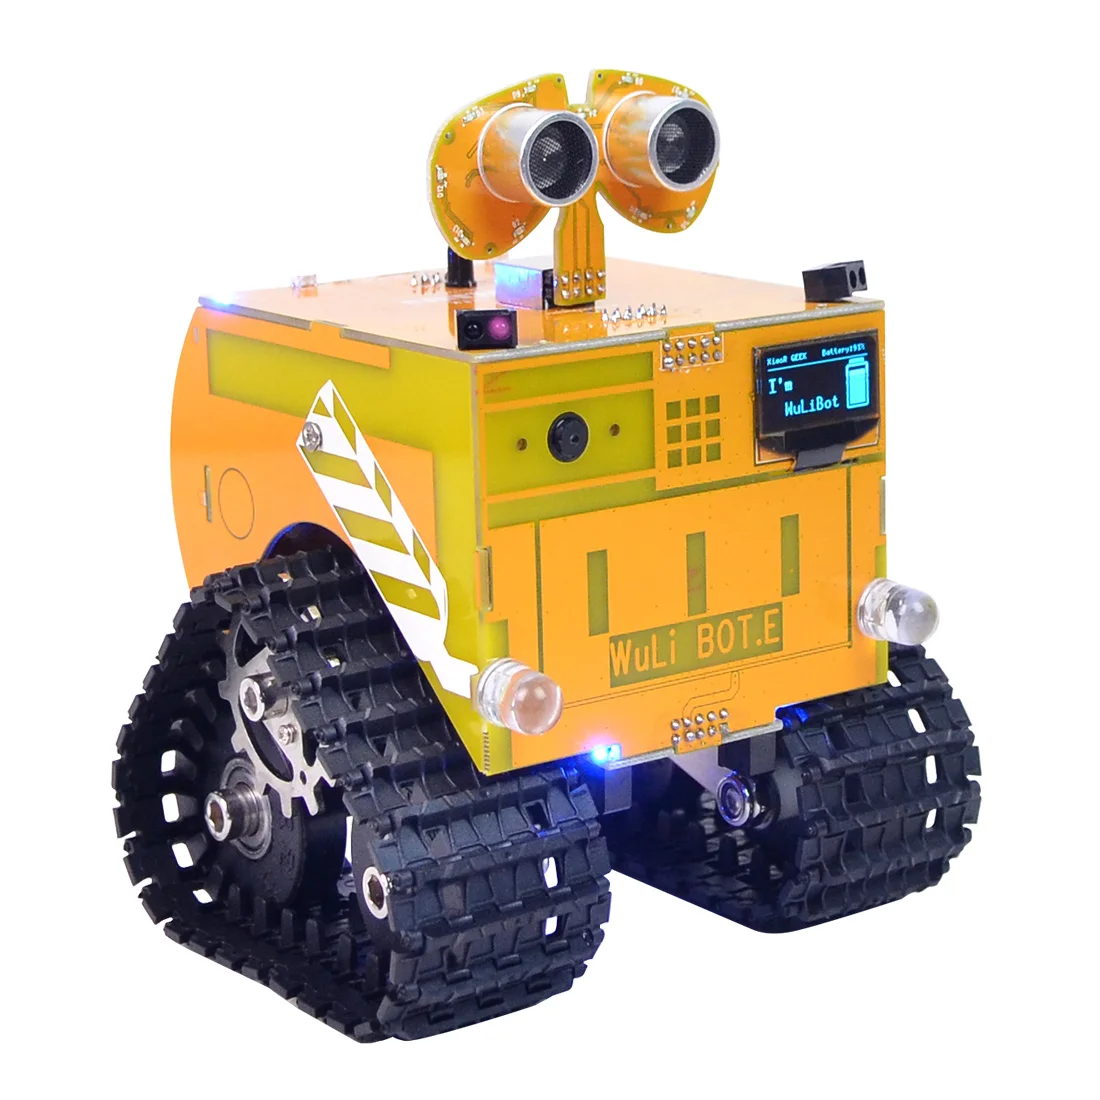 Программируемый робот WuliBot скретч+ Mixly RC Программирование трек автомобиль паровой развивающие игрушки с/без камеры